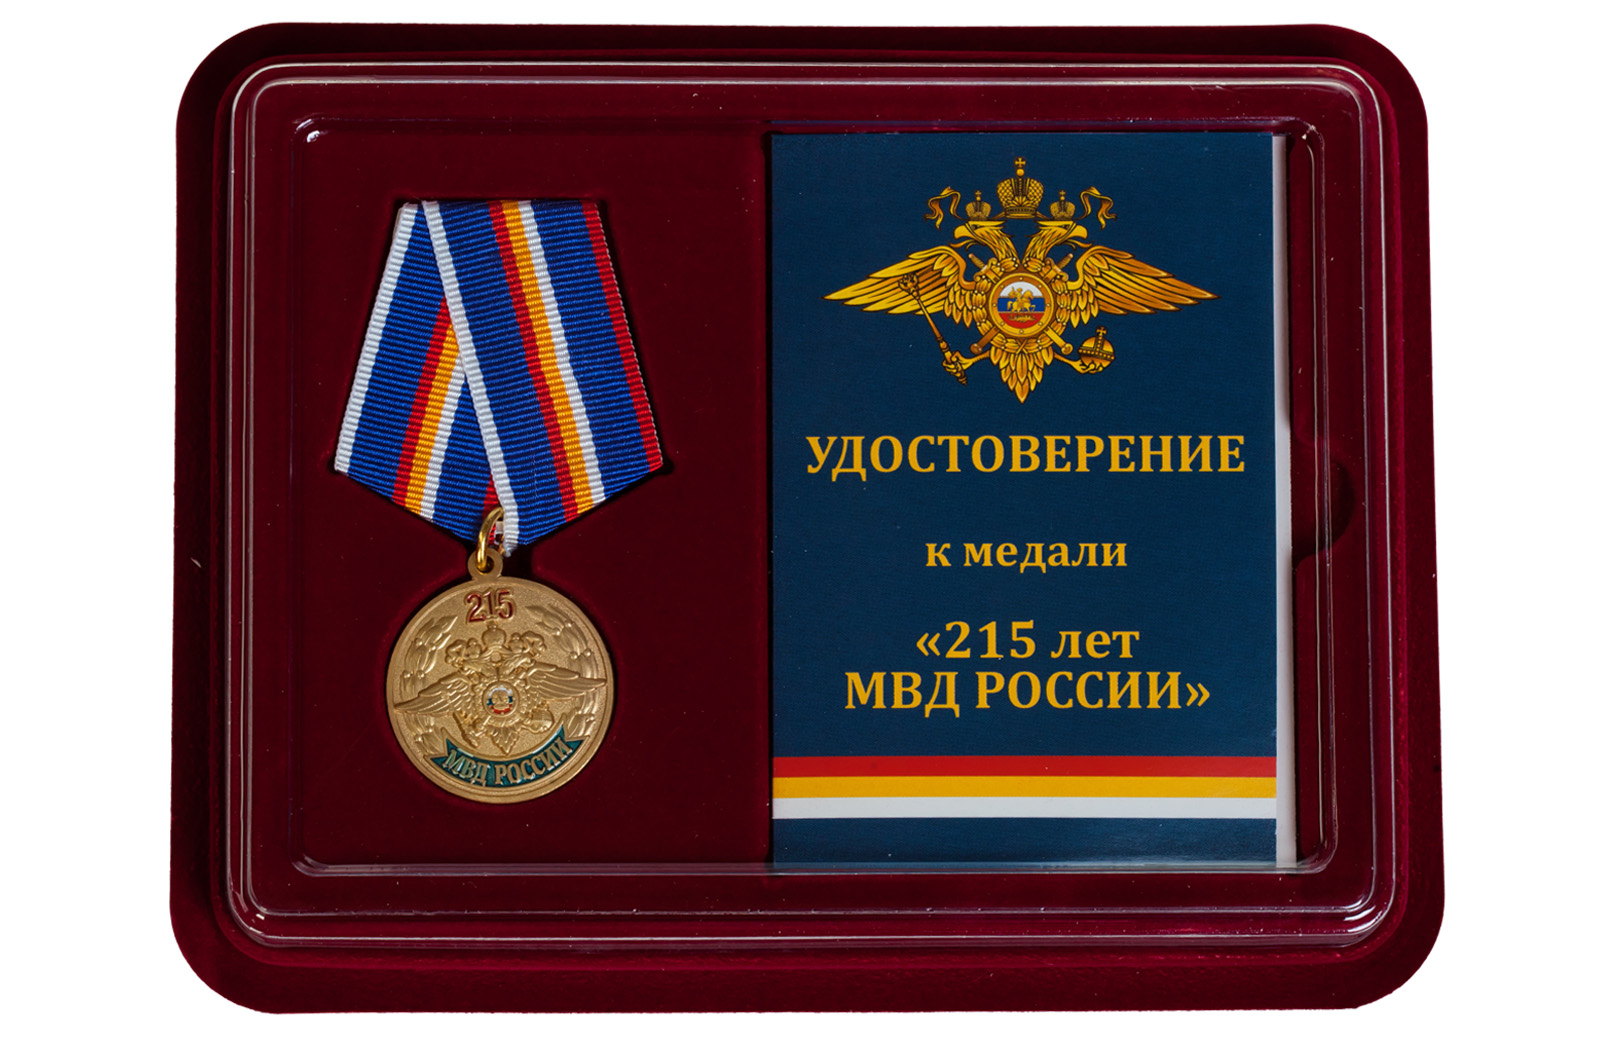 Купить памятная медаль 215 лет МВД России в подарок